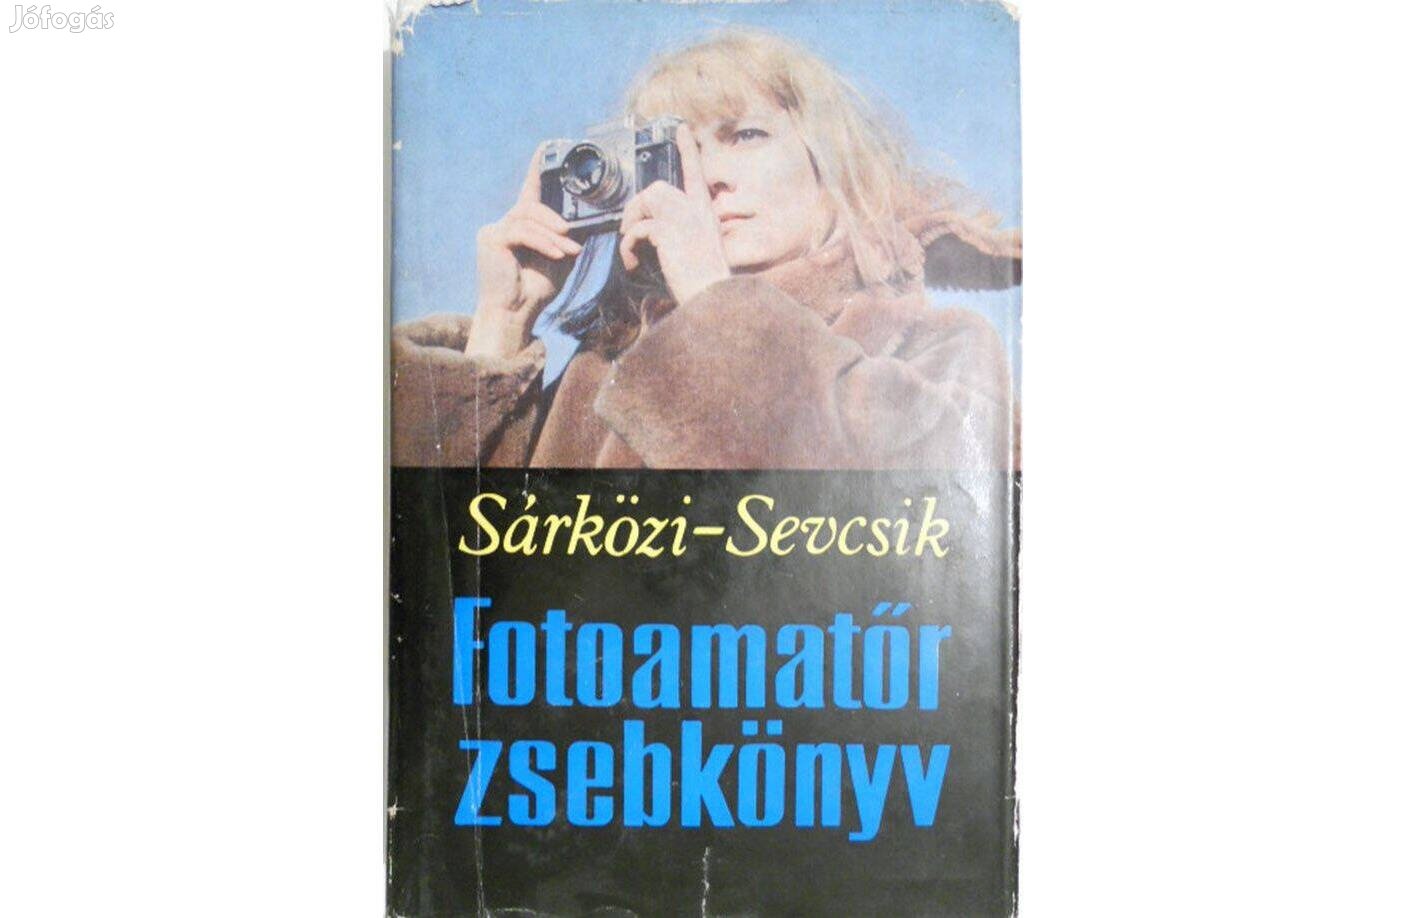 Sárközi Zoltán-Sevcsik Jenő dr. - Fotóamatőr zsebkönyv könyv